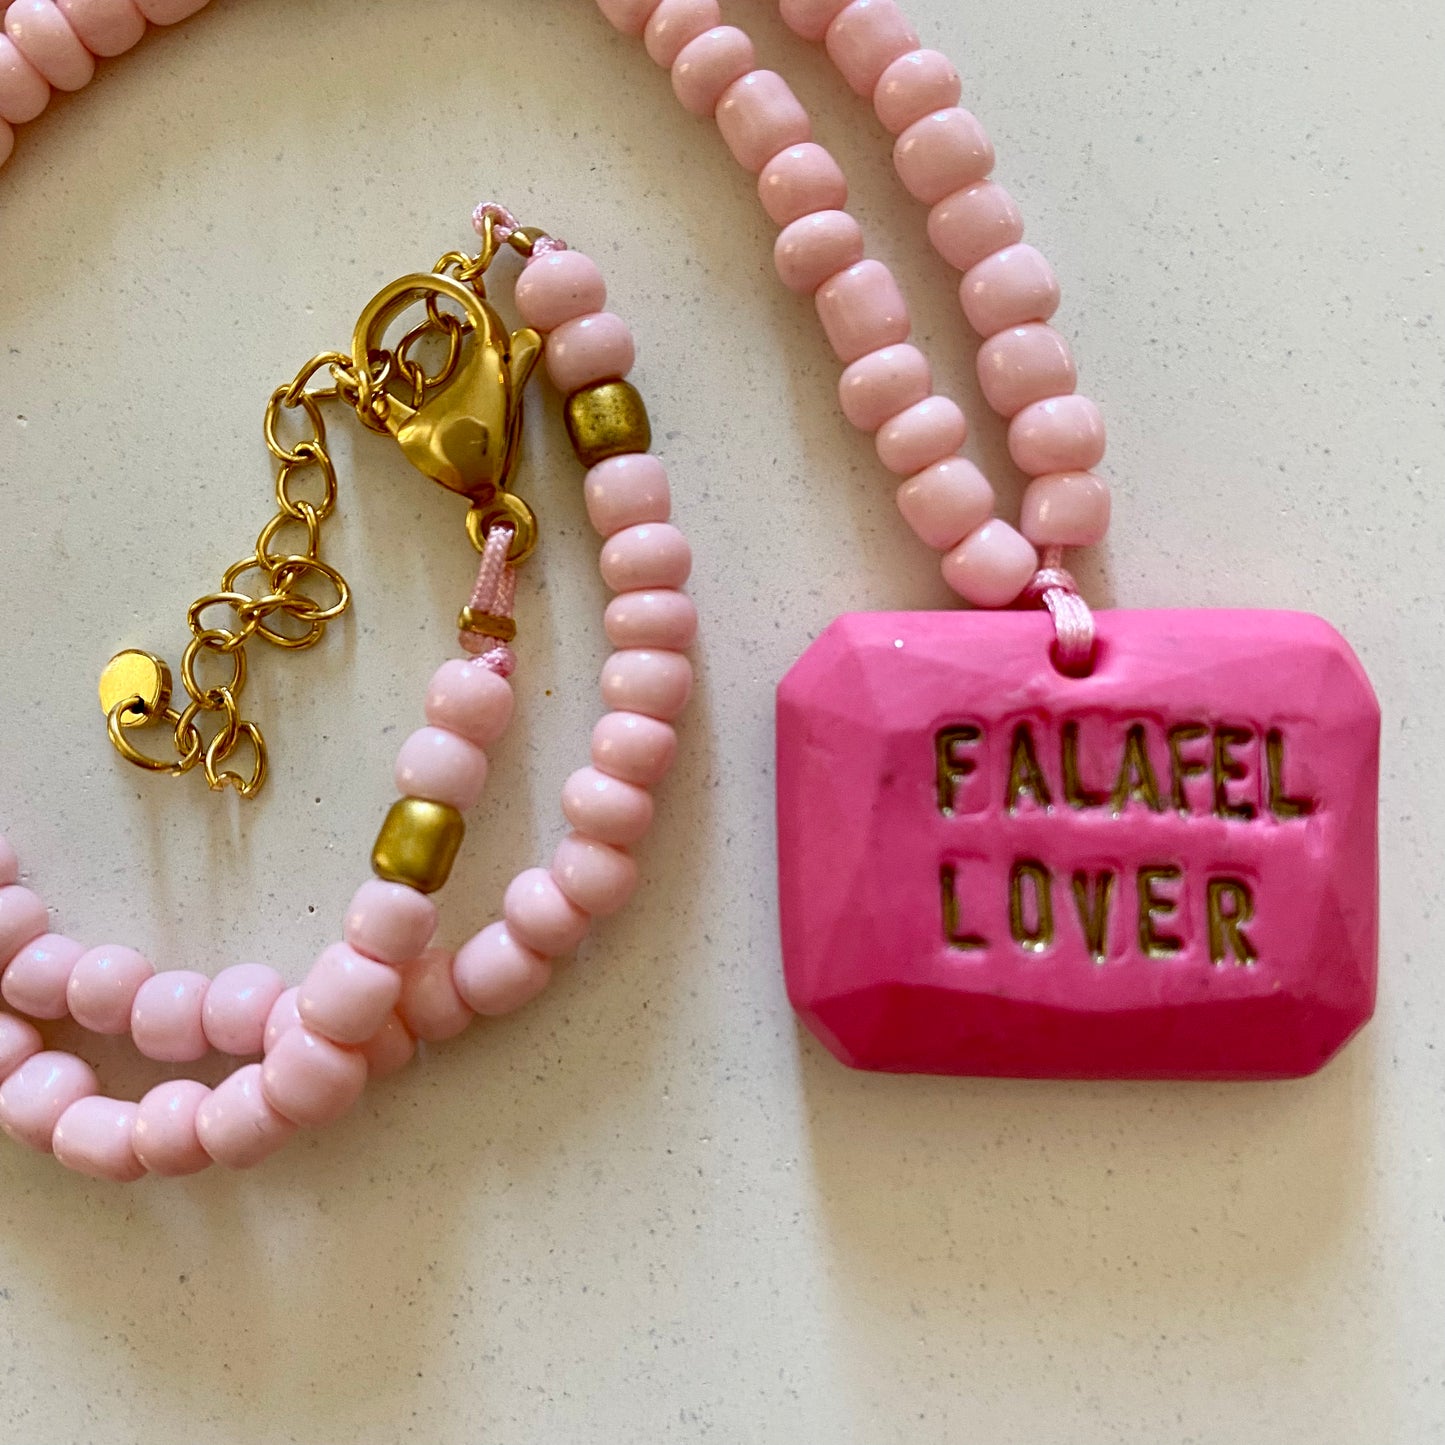 Falafel Lover